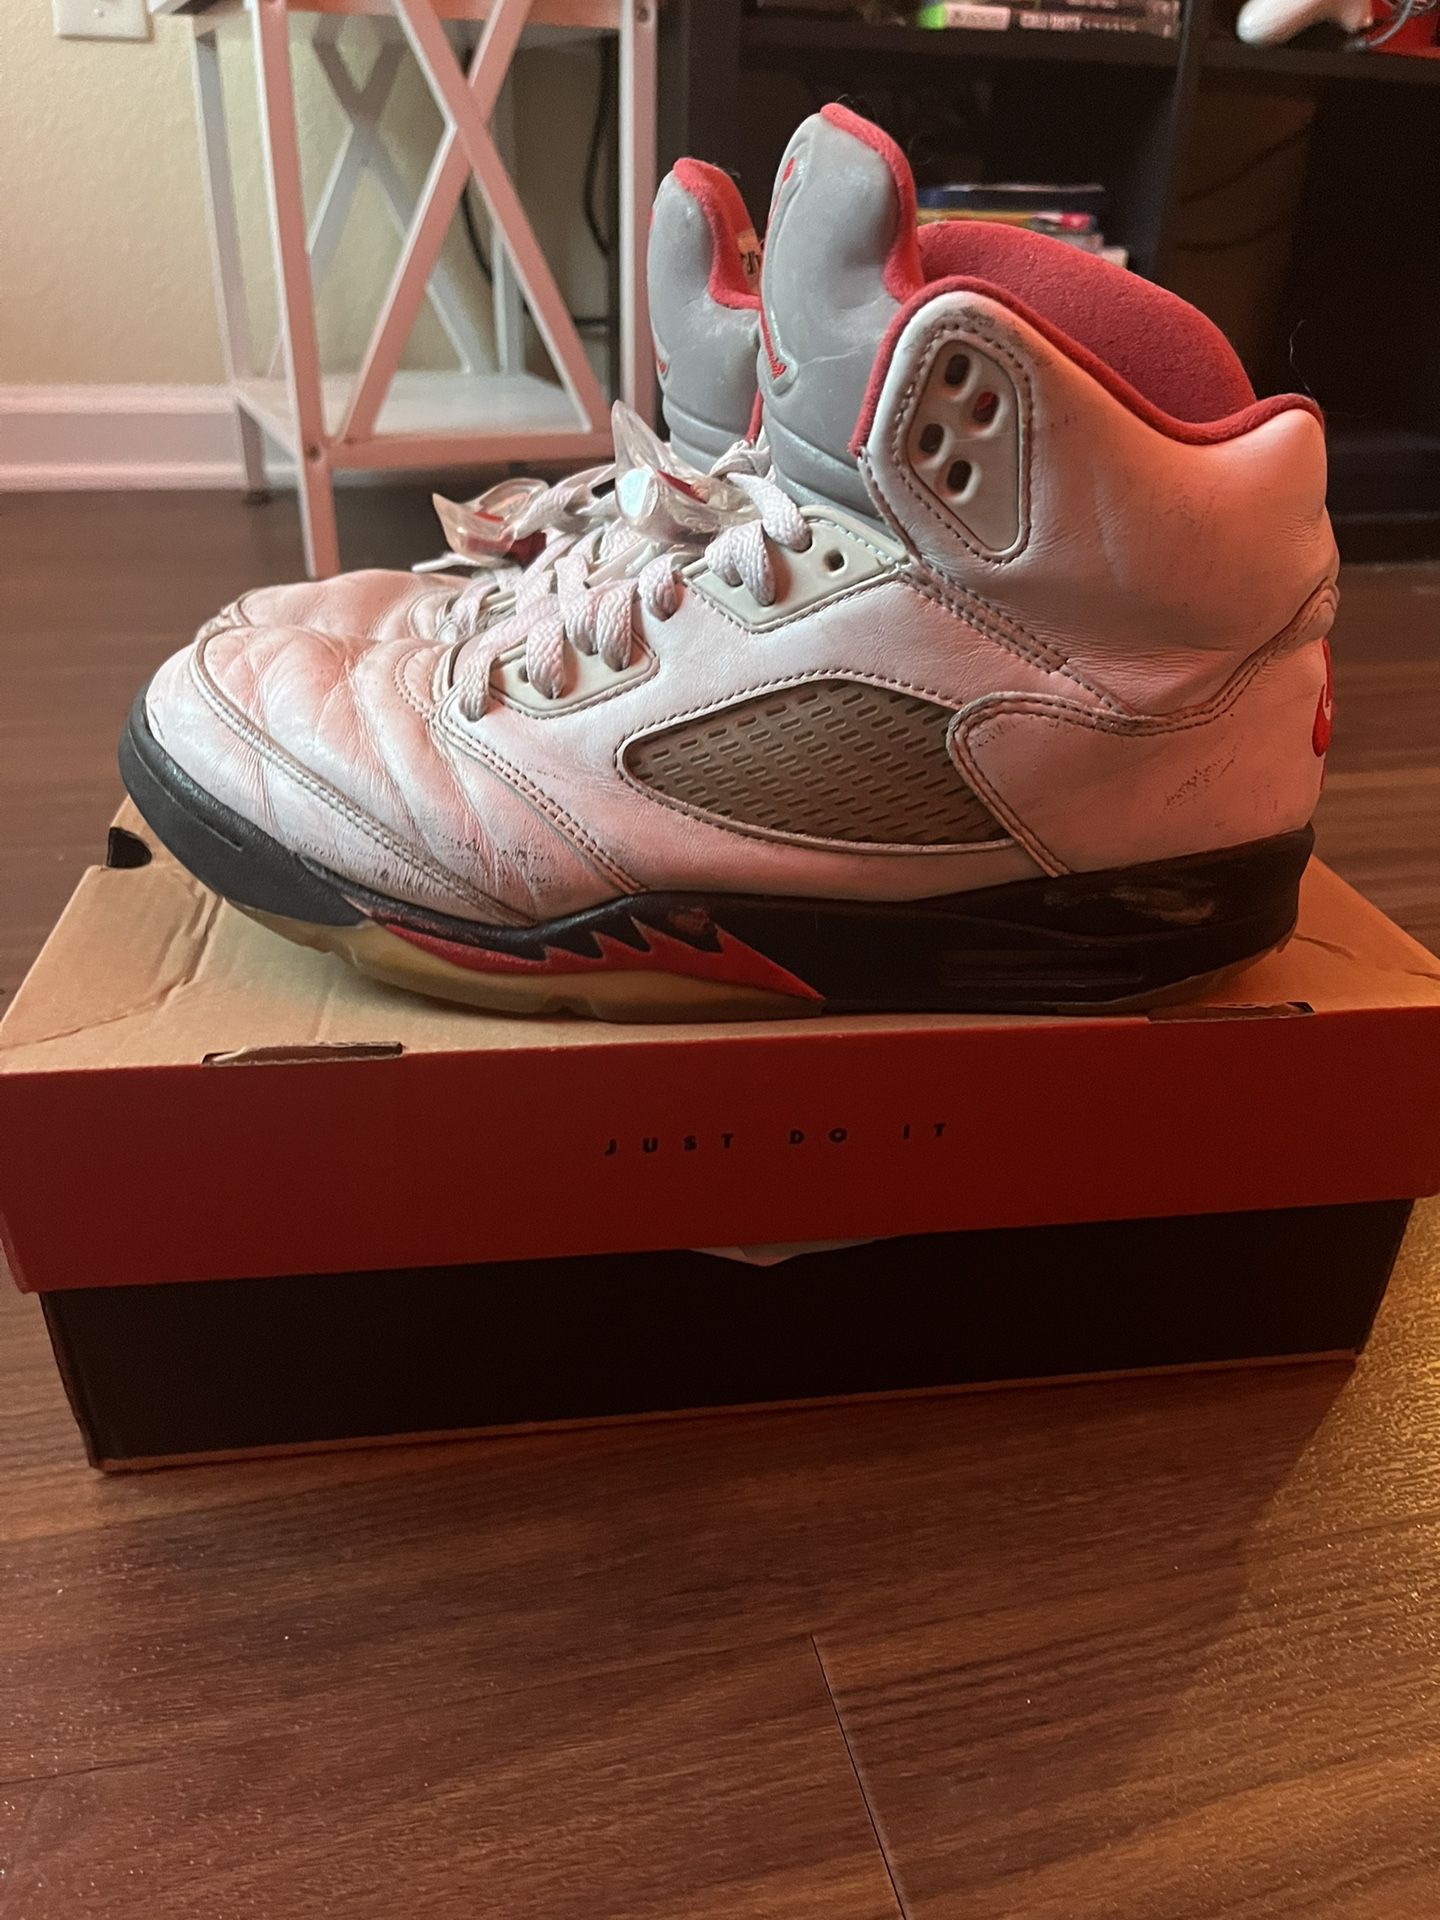 Jordan 5 Fire Red Size 10.5